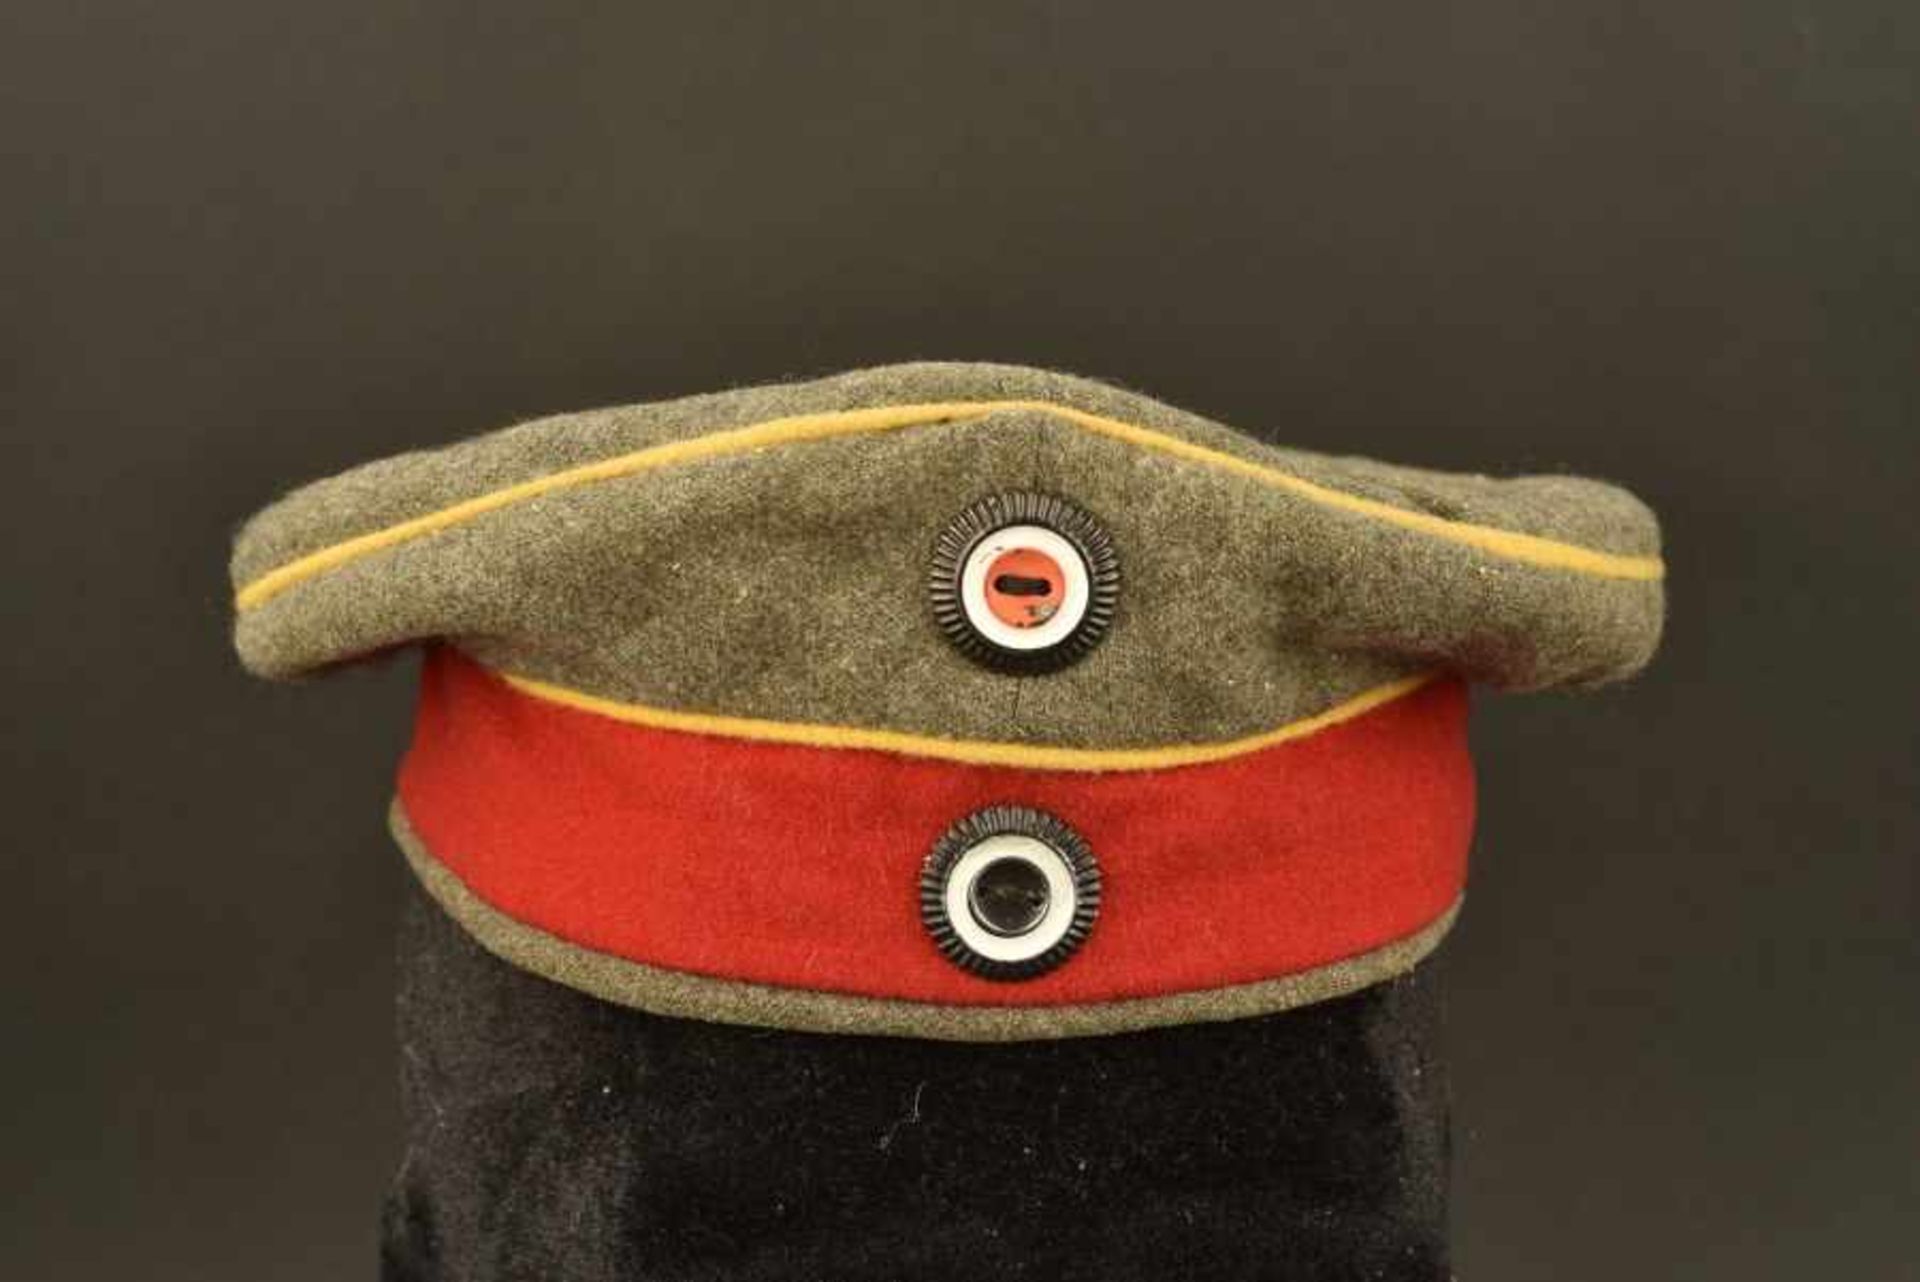 Mütze troupe de la CavalerieProbable achat personnel en drap feldgrau, bandeau rouge, liseré